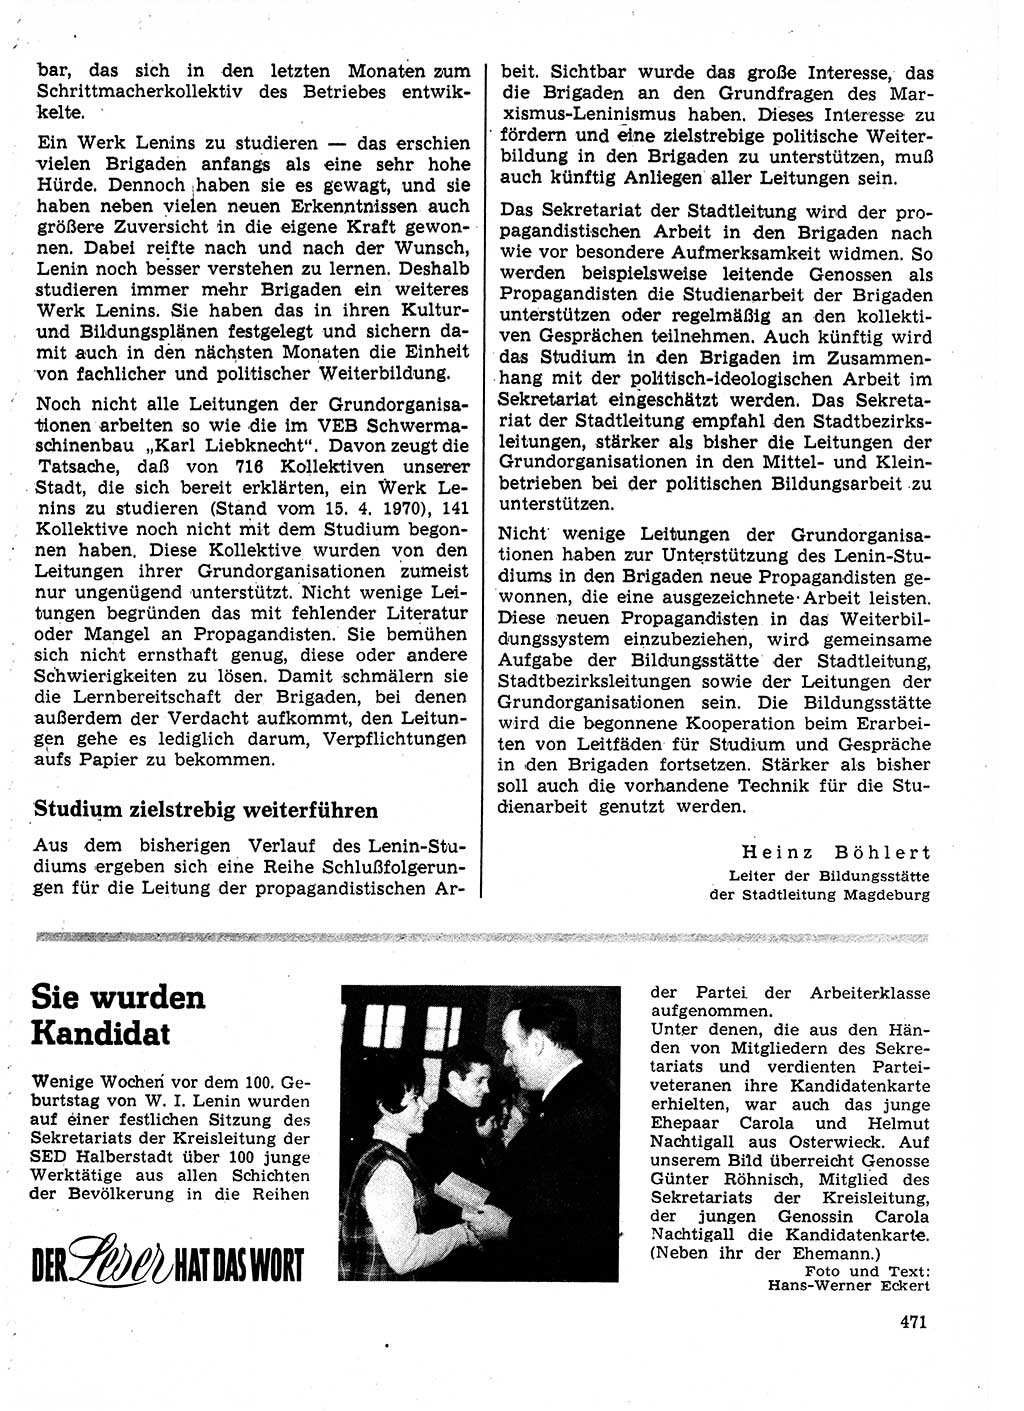 Neuer Weg (NW), Organ des Zentralkomitees (ZK) der SED (Sozialistische Einheitspartei Deutschlands) für Fragen des Parteilebens, 25. Jahrgang [Deutsche Demokratische Republik (DDR)] 1970, Seite 471 (NW ZK SED DDR 1970, S. 471)